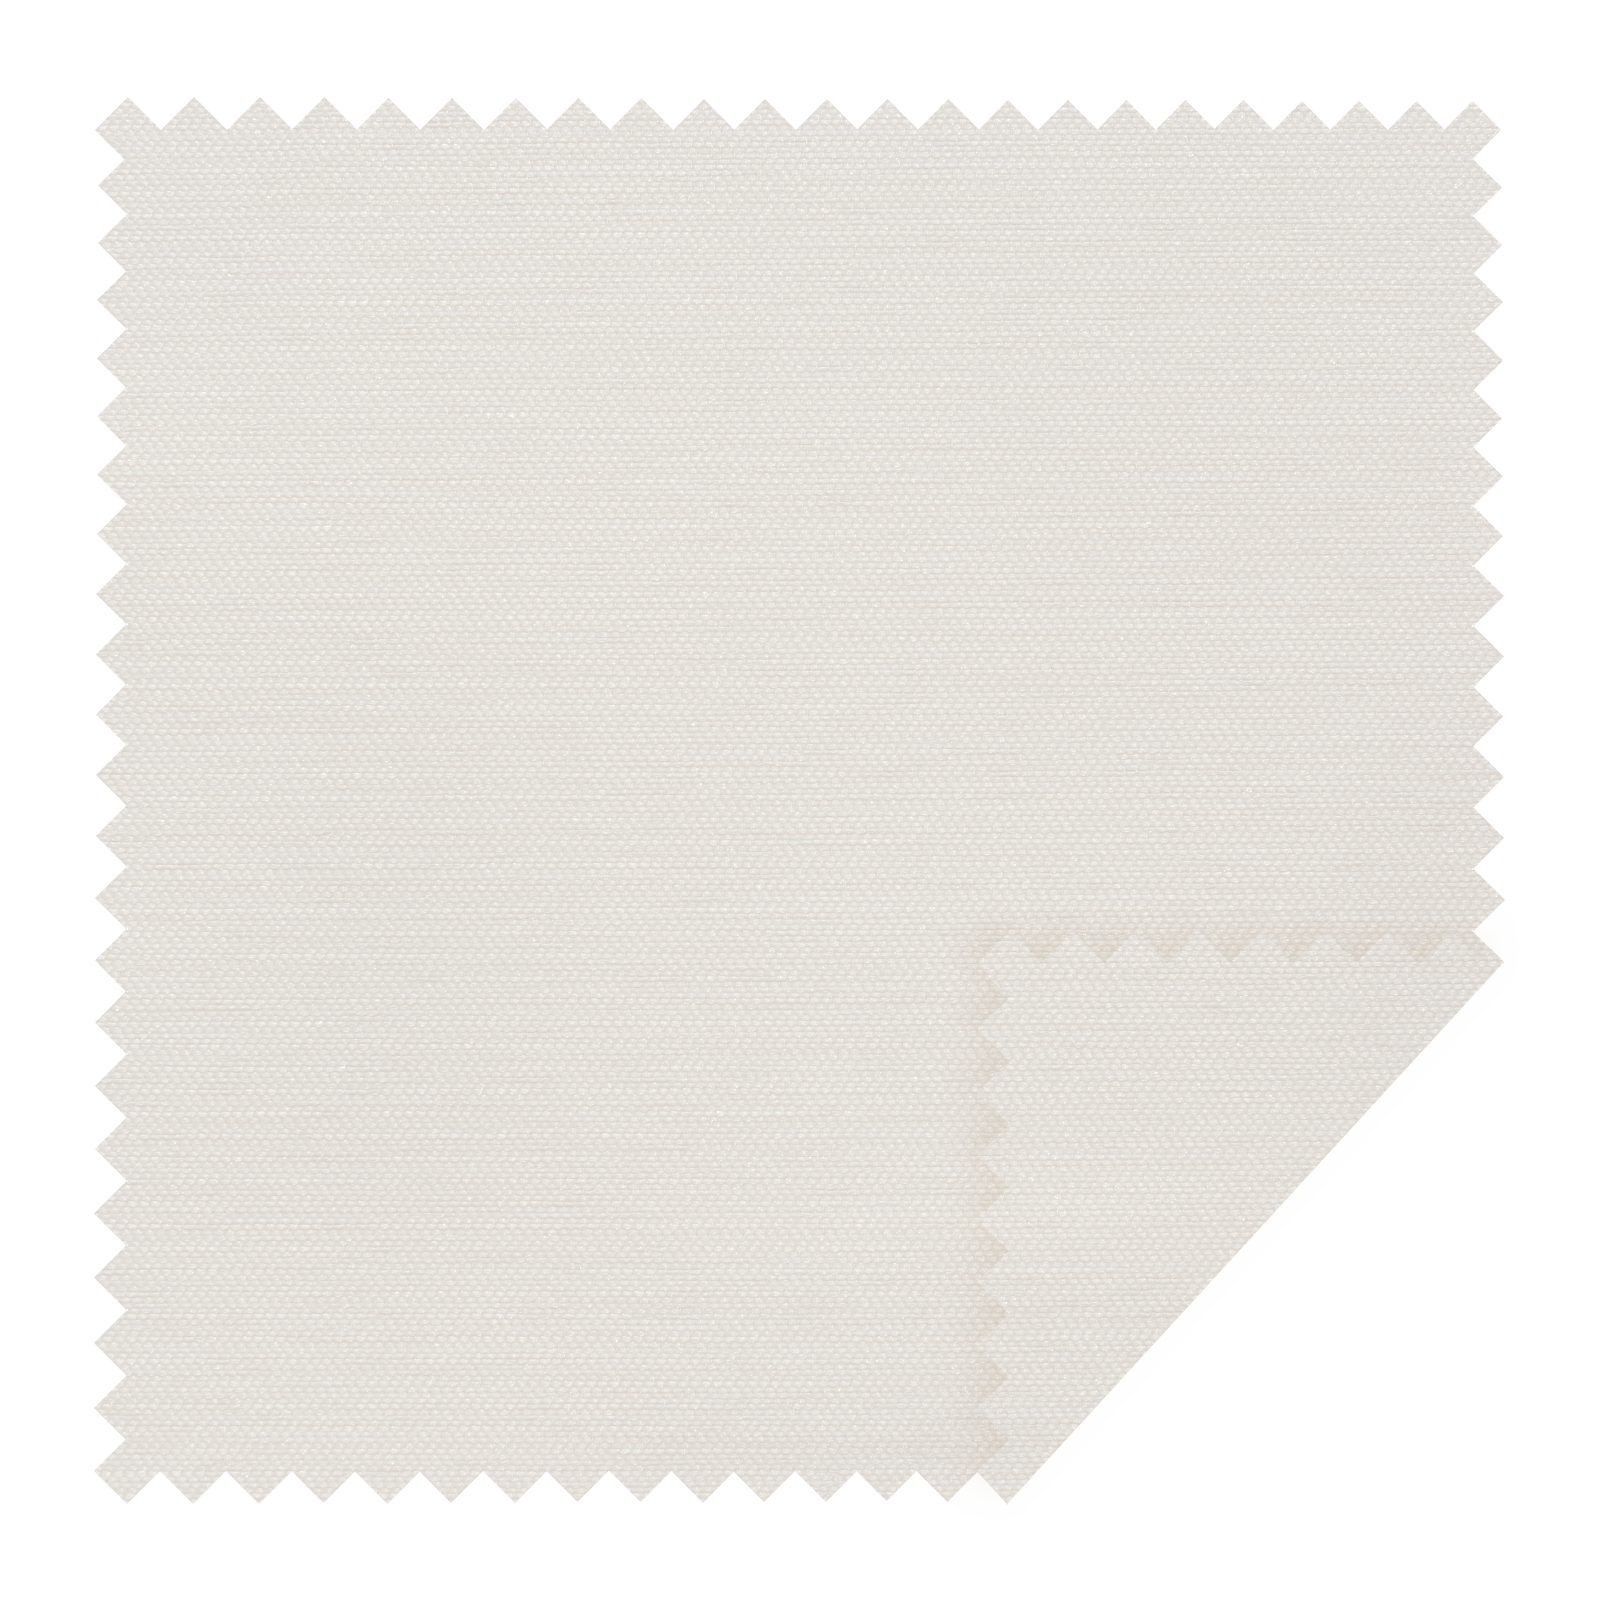 80% shading Off-White 02206